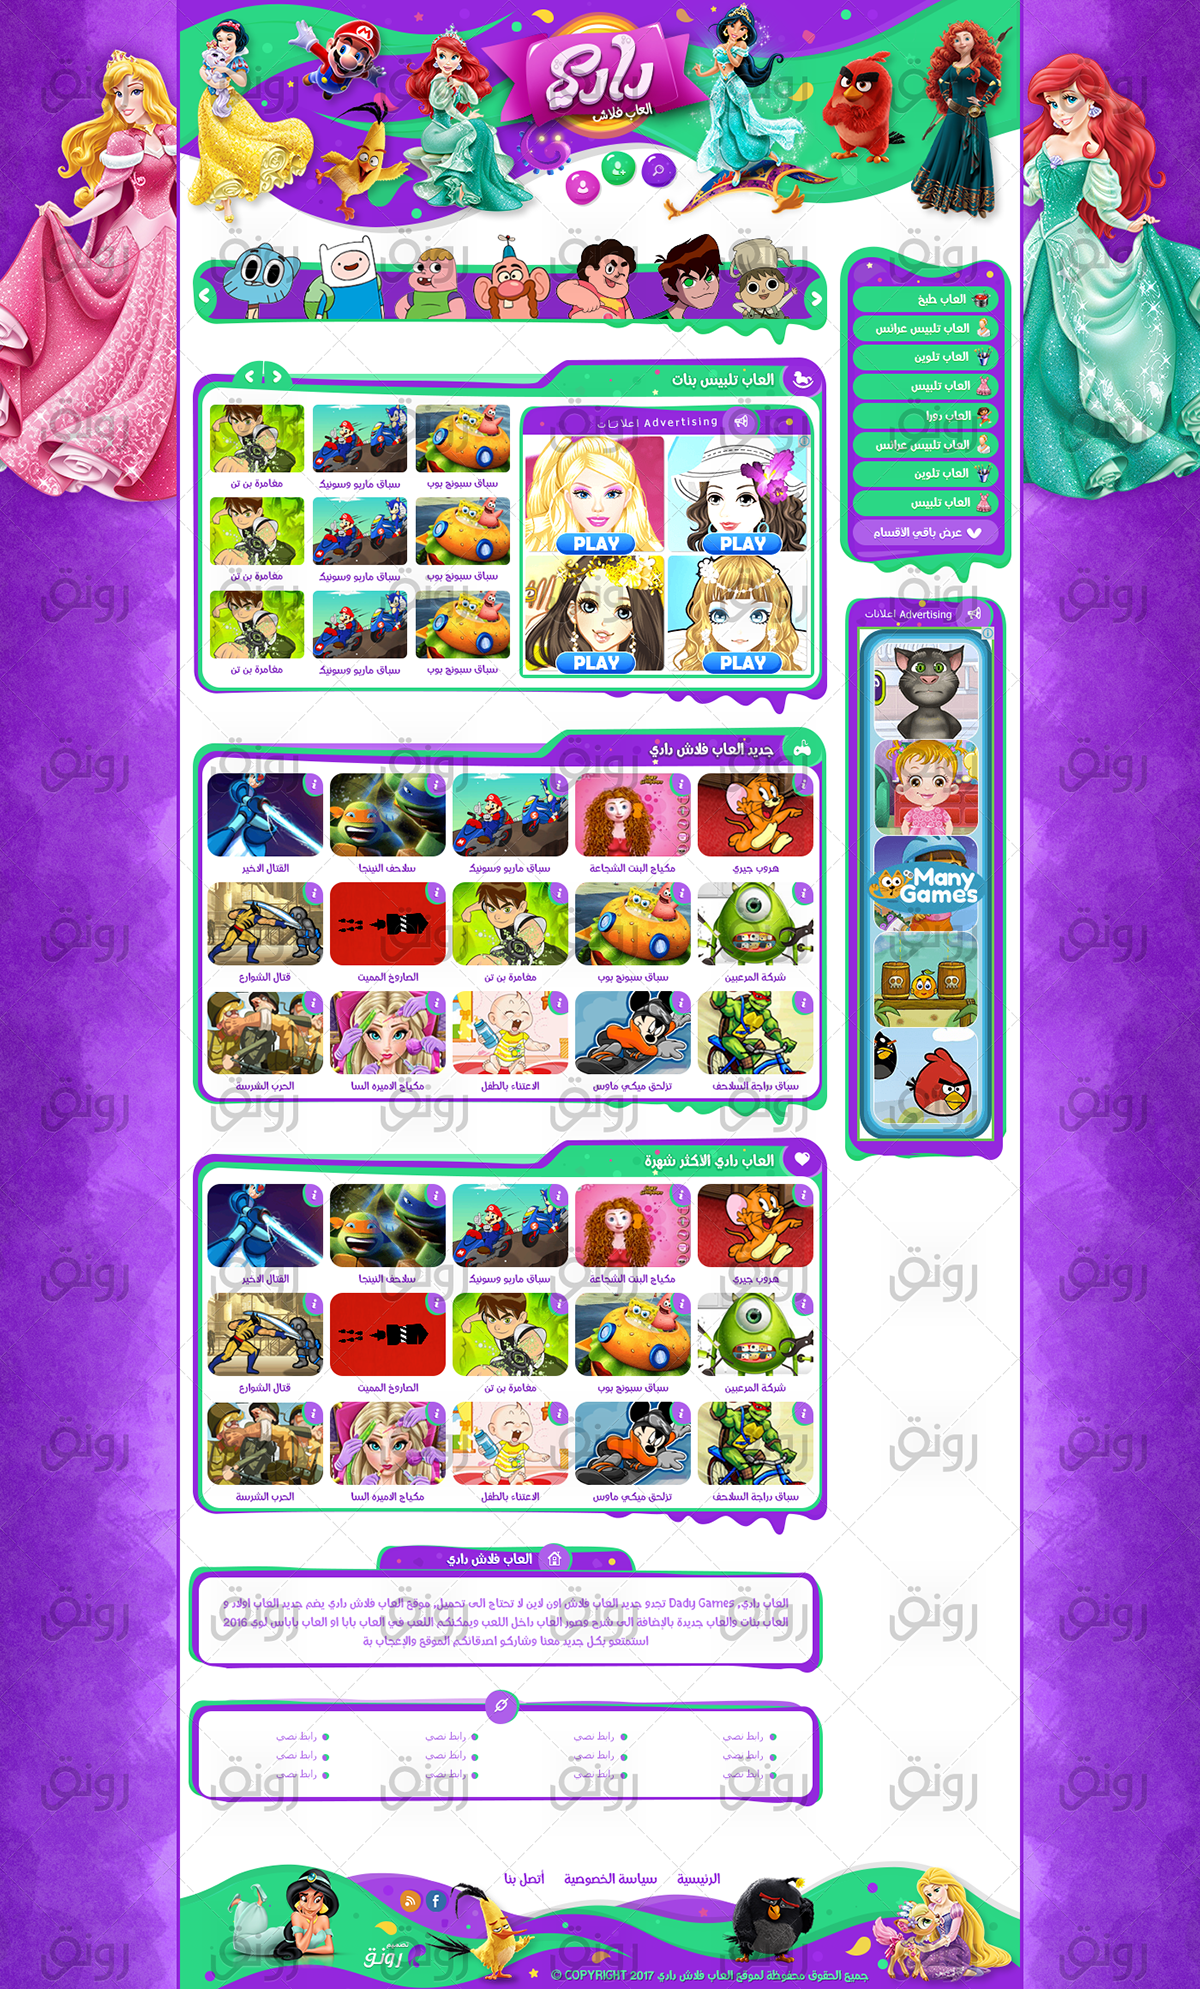 Games toys kids Website design onarcade Flash girls girls games kids games flash games العاب تصميم العاب فلاش العاب بنات